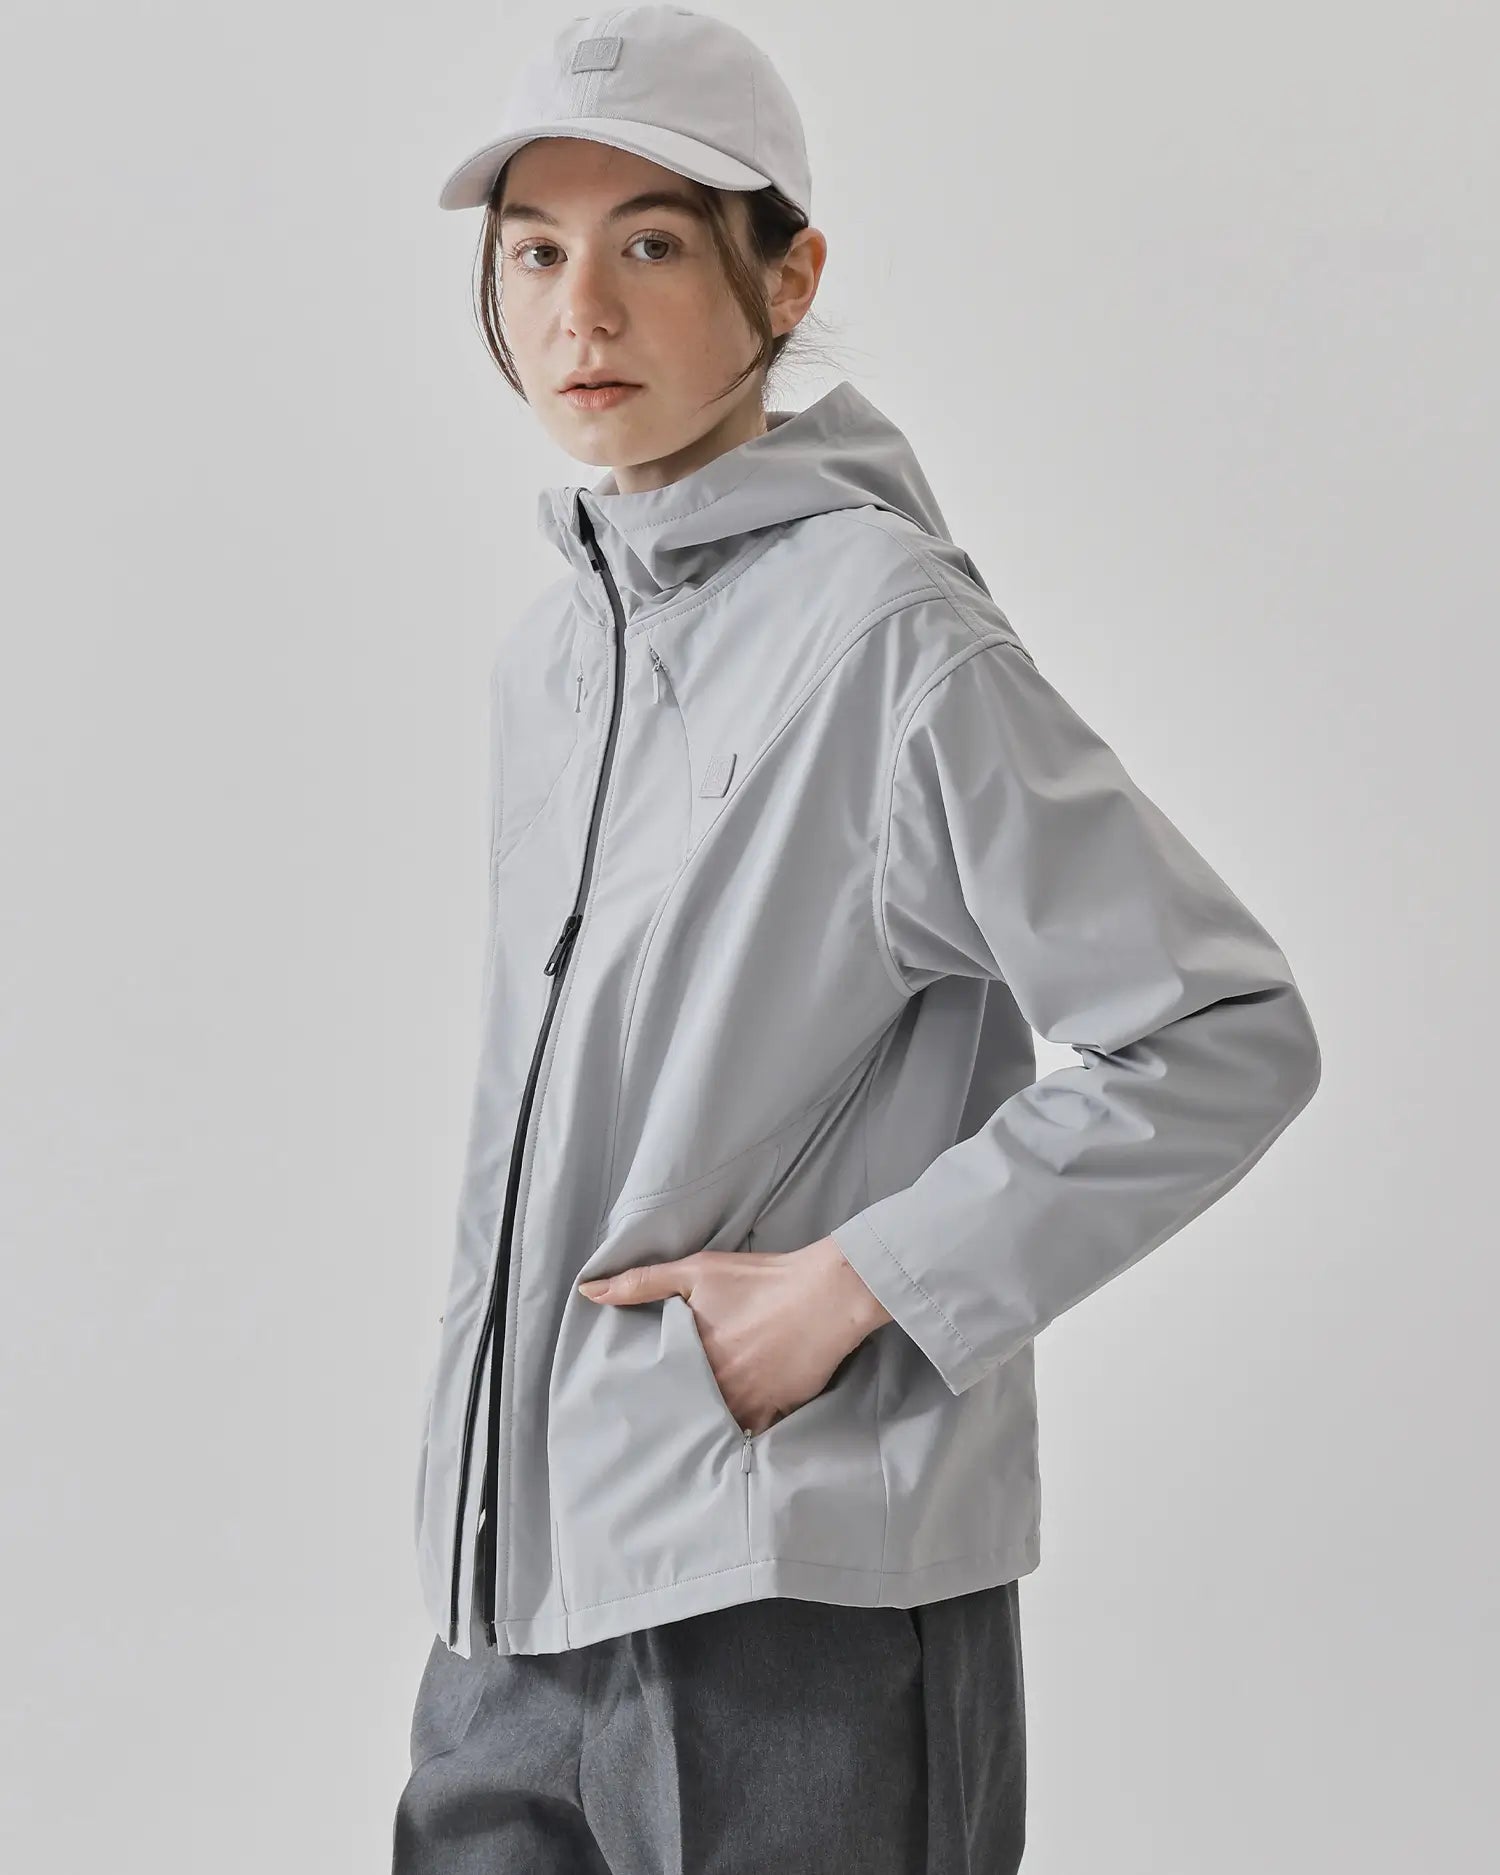 Women's Sports Jacket in Gray 05 #gray